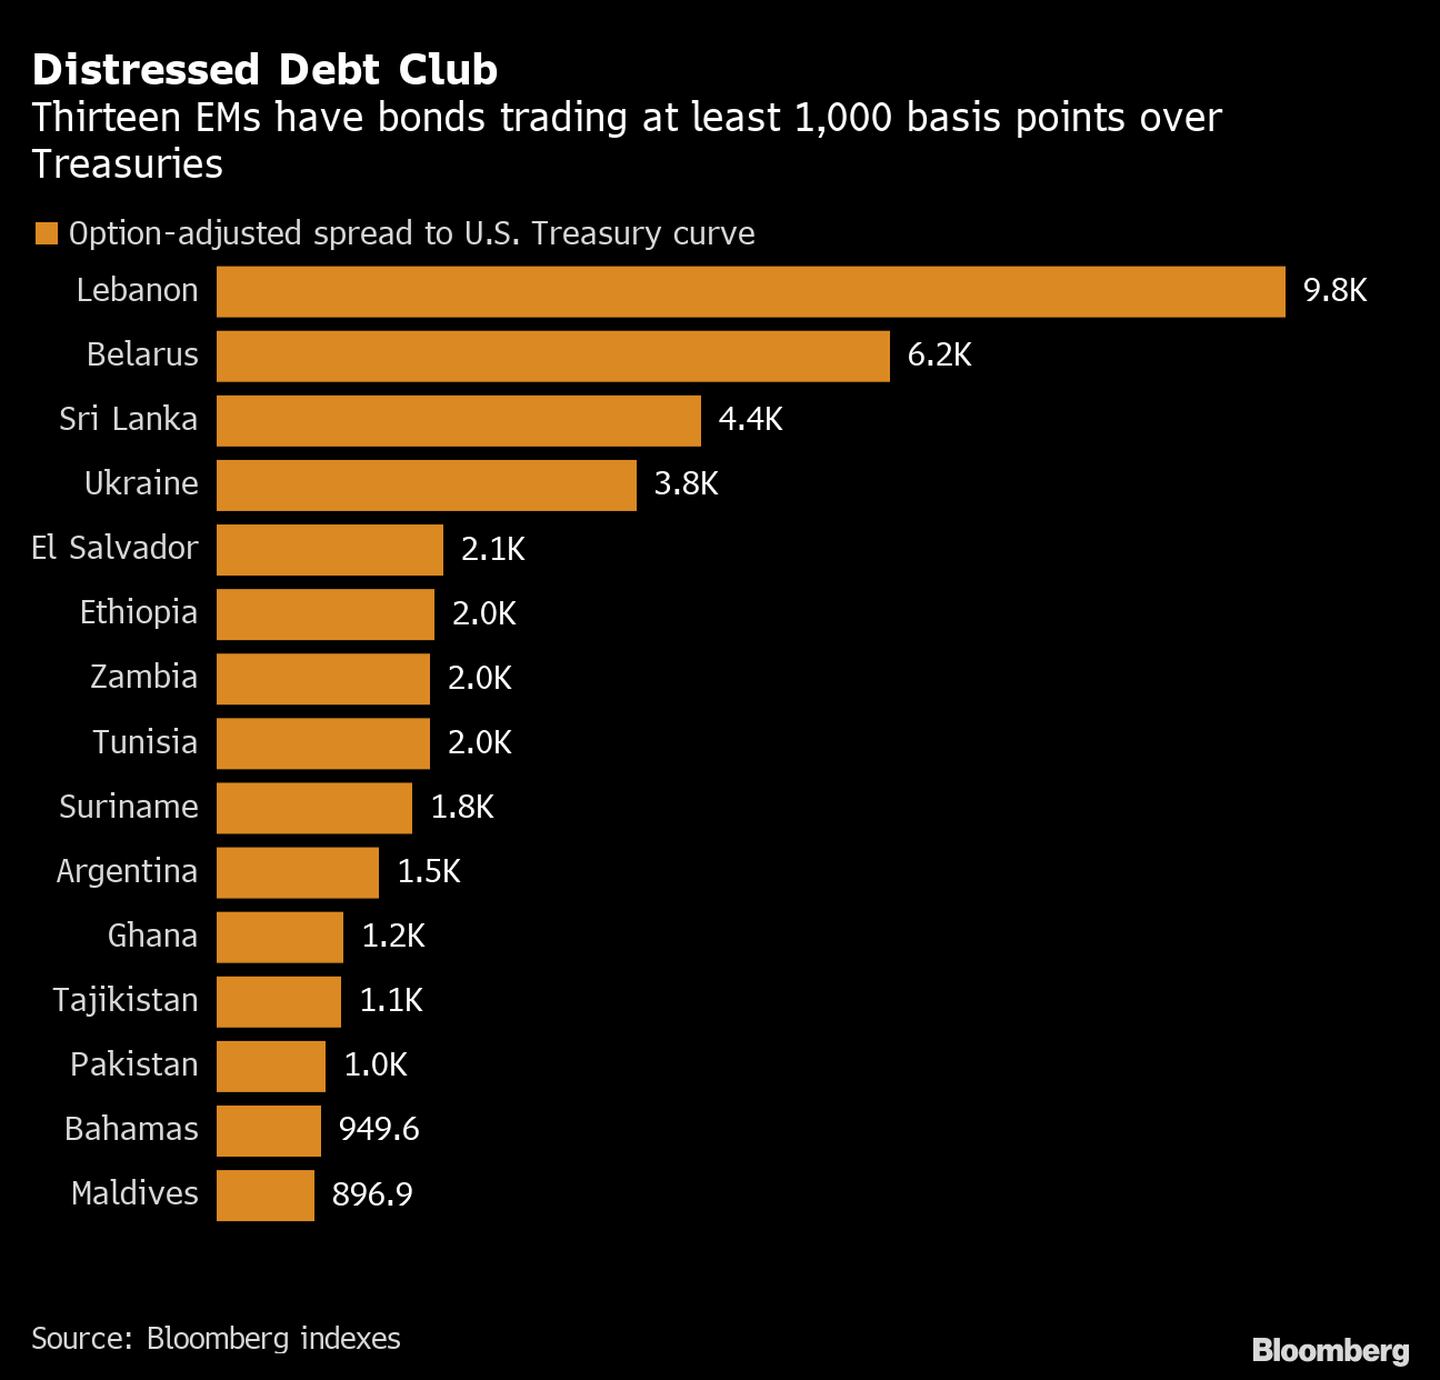 Trece mercados emergentes tienen bonos que cotizan al menos 1.000 puntos básicos sobre los títulos del Tesoro de EE.UU.
Naranja: Diferencial ajustado a la opción de la curva del Tesoro de EE.UU. 
De arriba hacia abajo: Líbano, Bielorrusia, Sri Lanka, Ucrania, El Salvador, Etiopía, Zambia, Túnez, Surinam, Argentina, Ghana, Tayikistán, Pakistán, Bahamas, Maldivasdfd